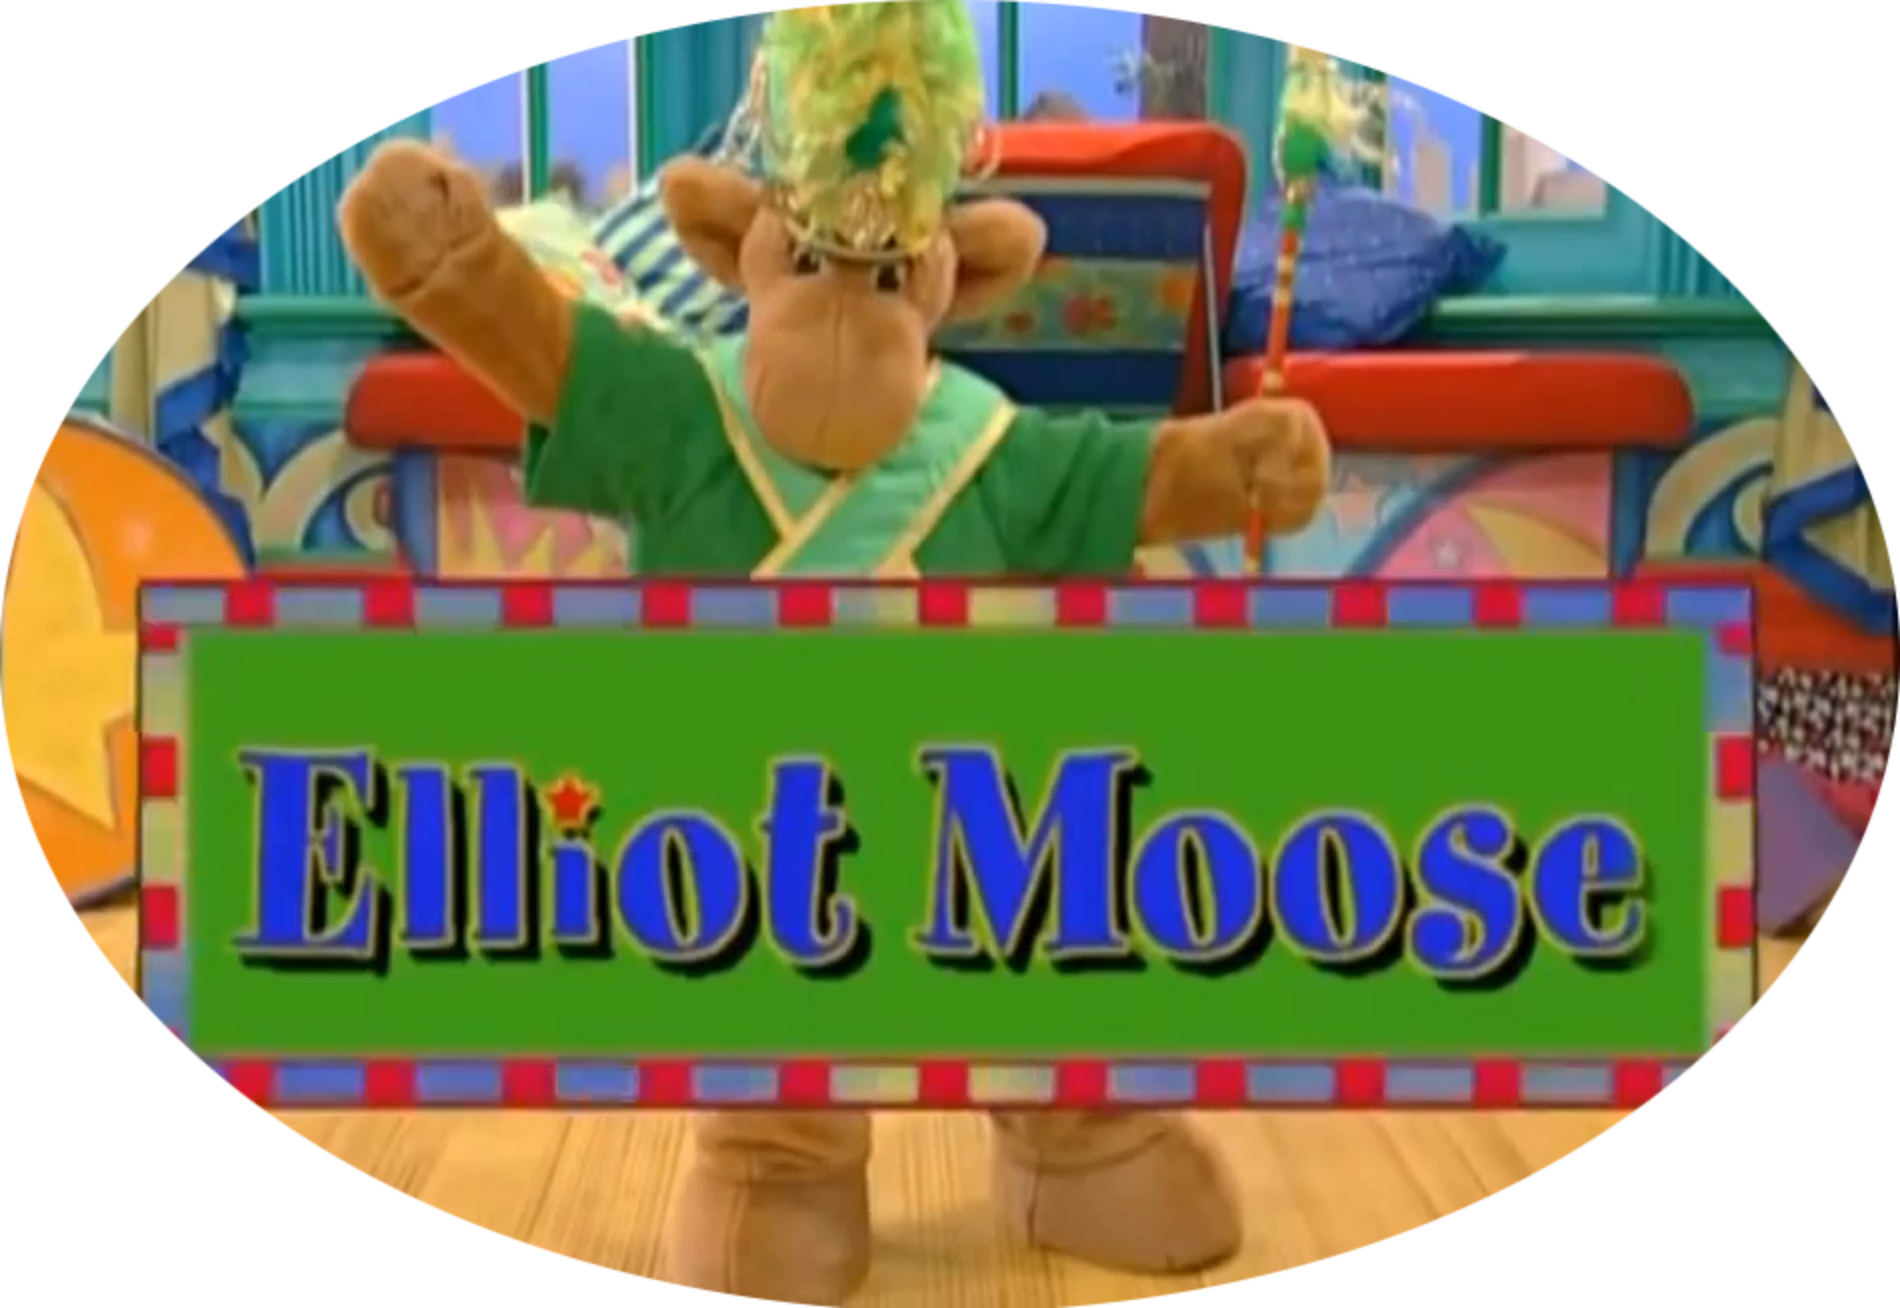 Elliot Moose (2 DVDs Box Set)